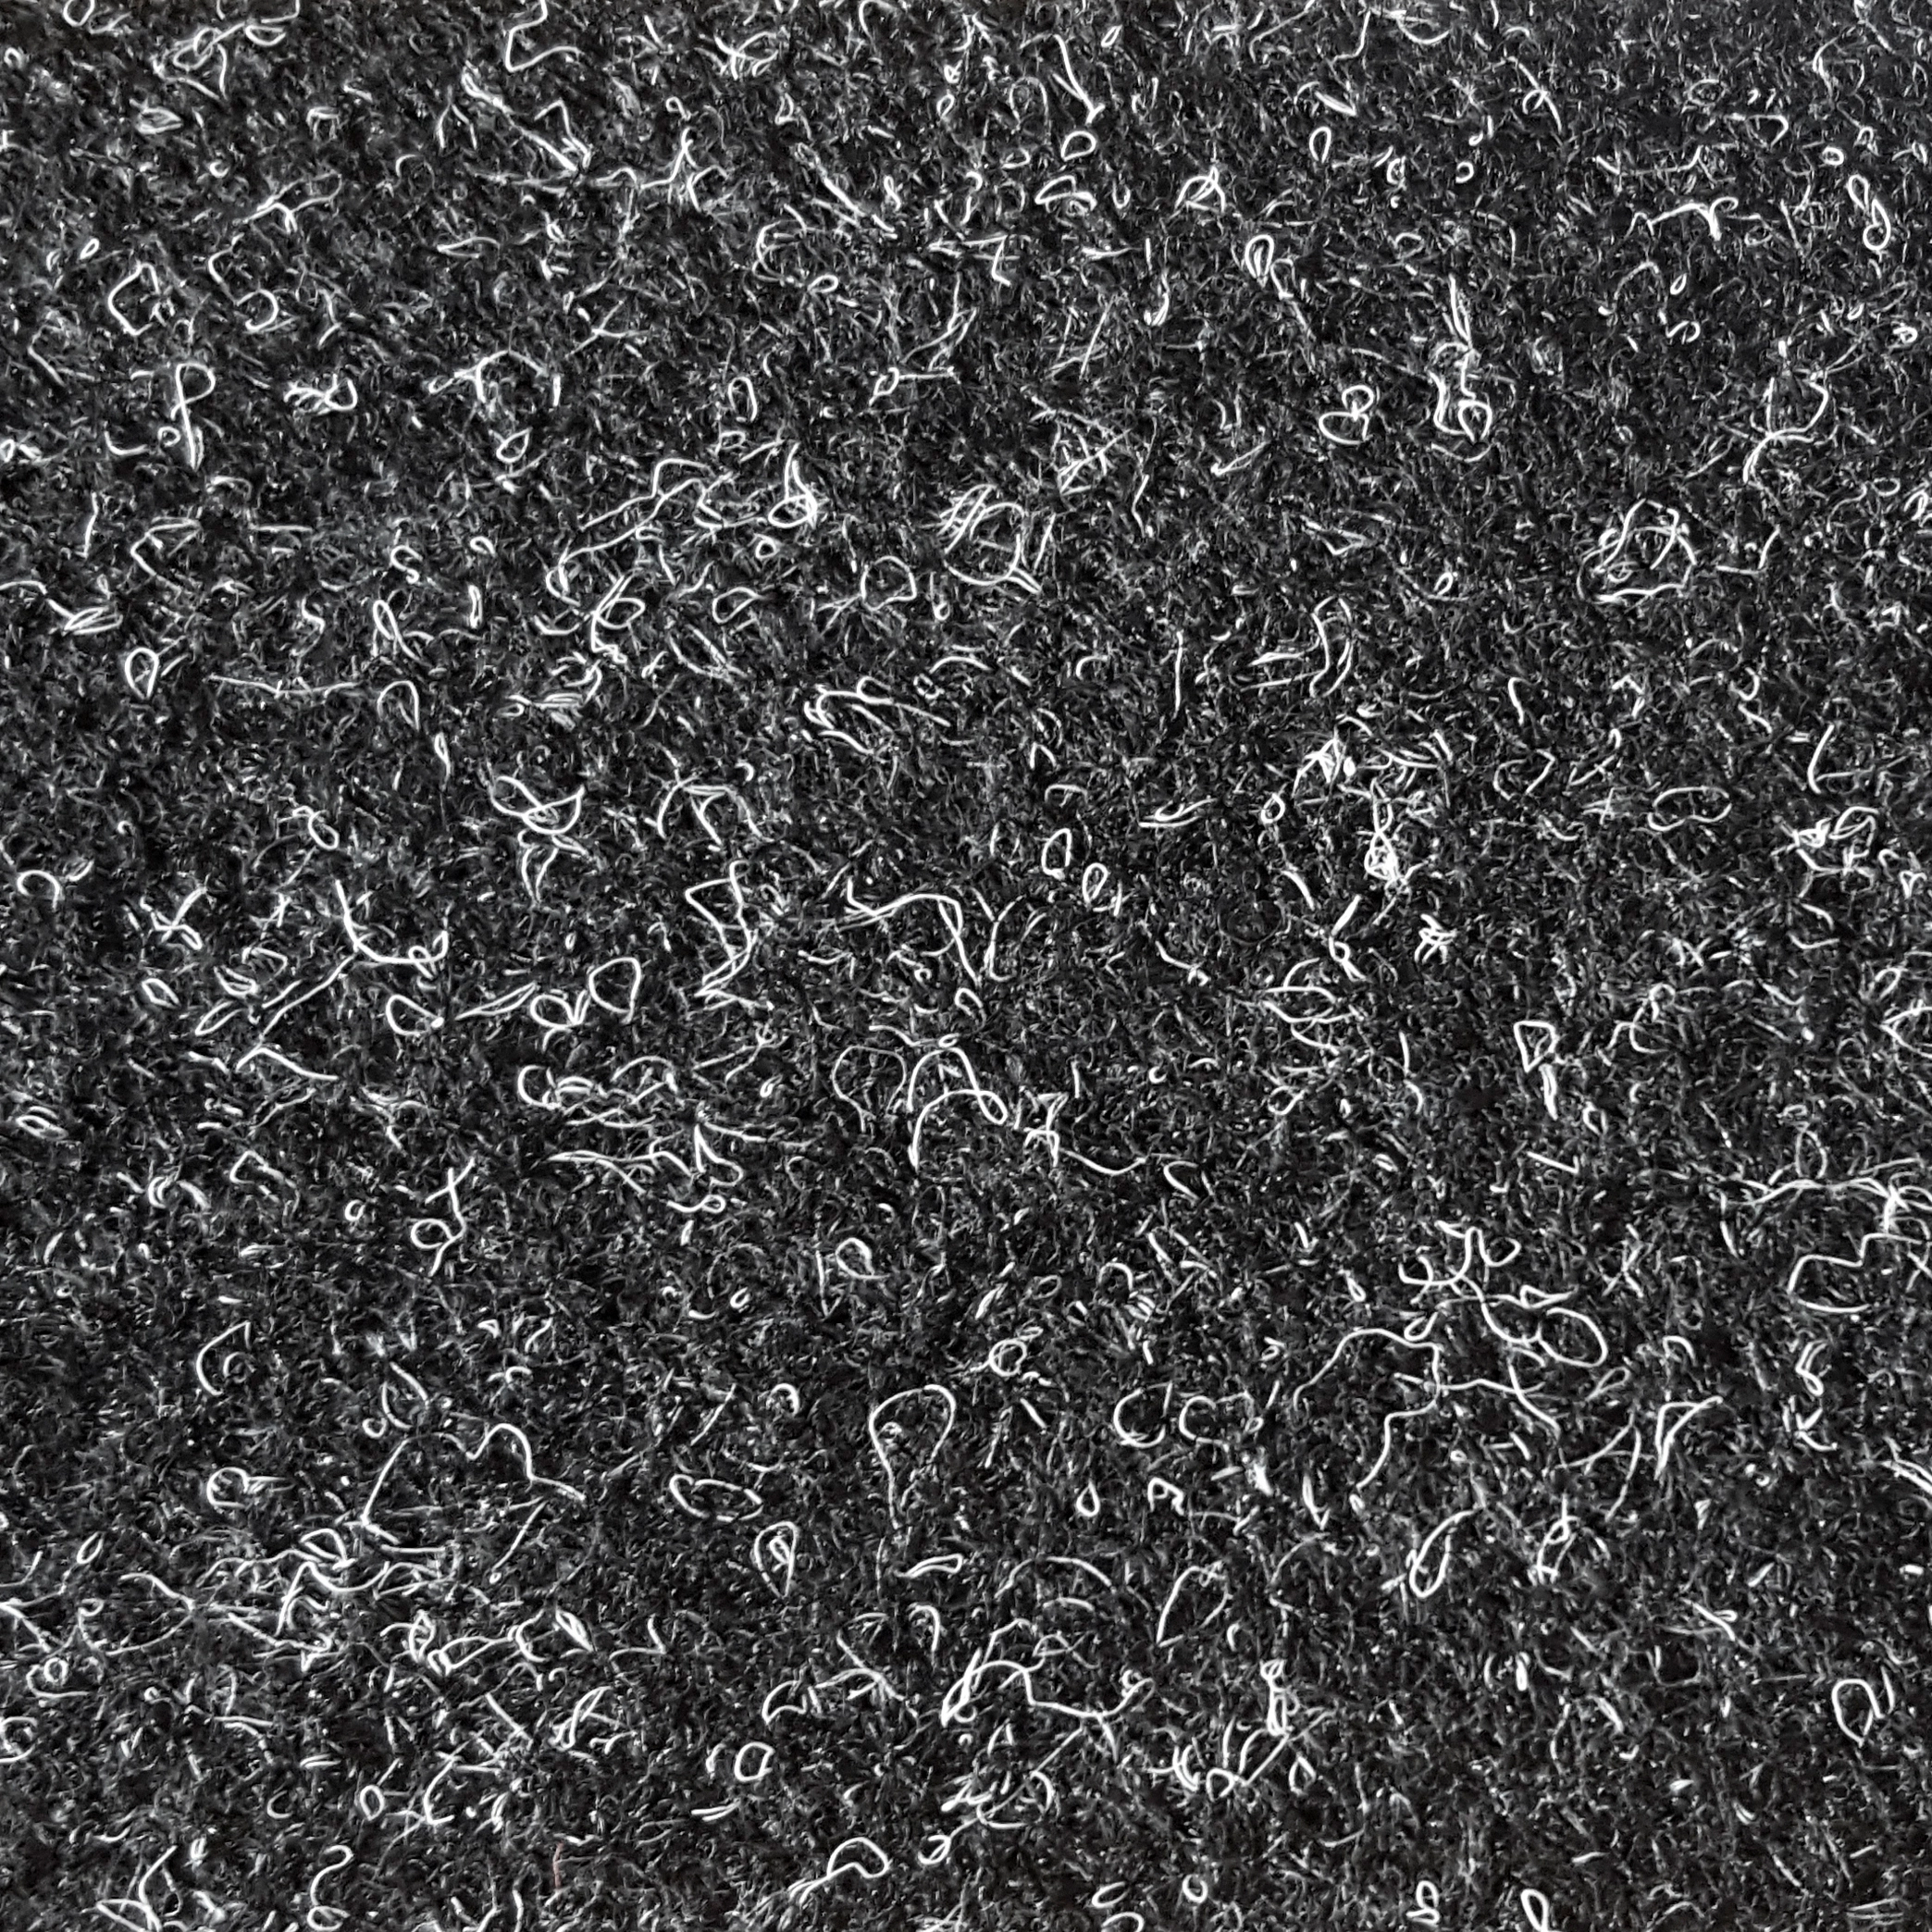 Teppichboden Nadelfilz Invita anthrazit 400 cm breit